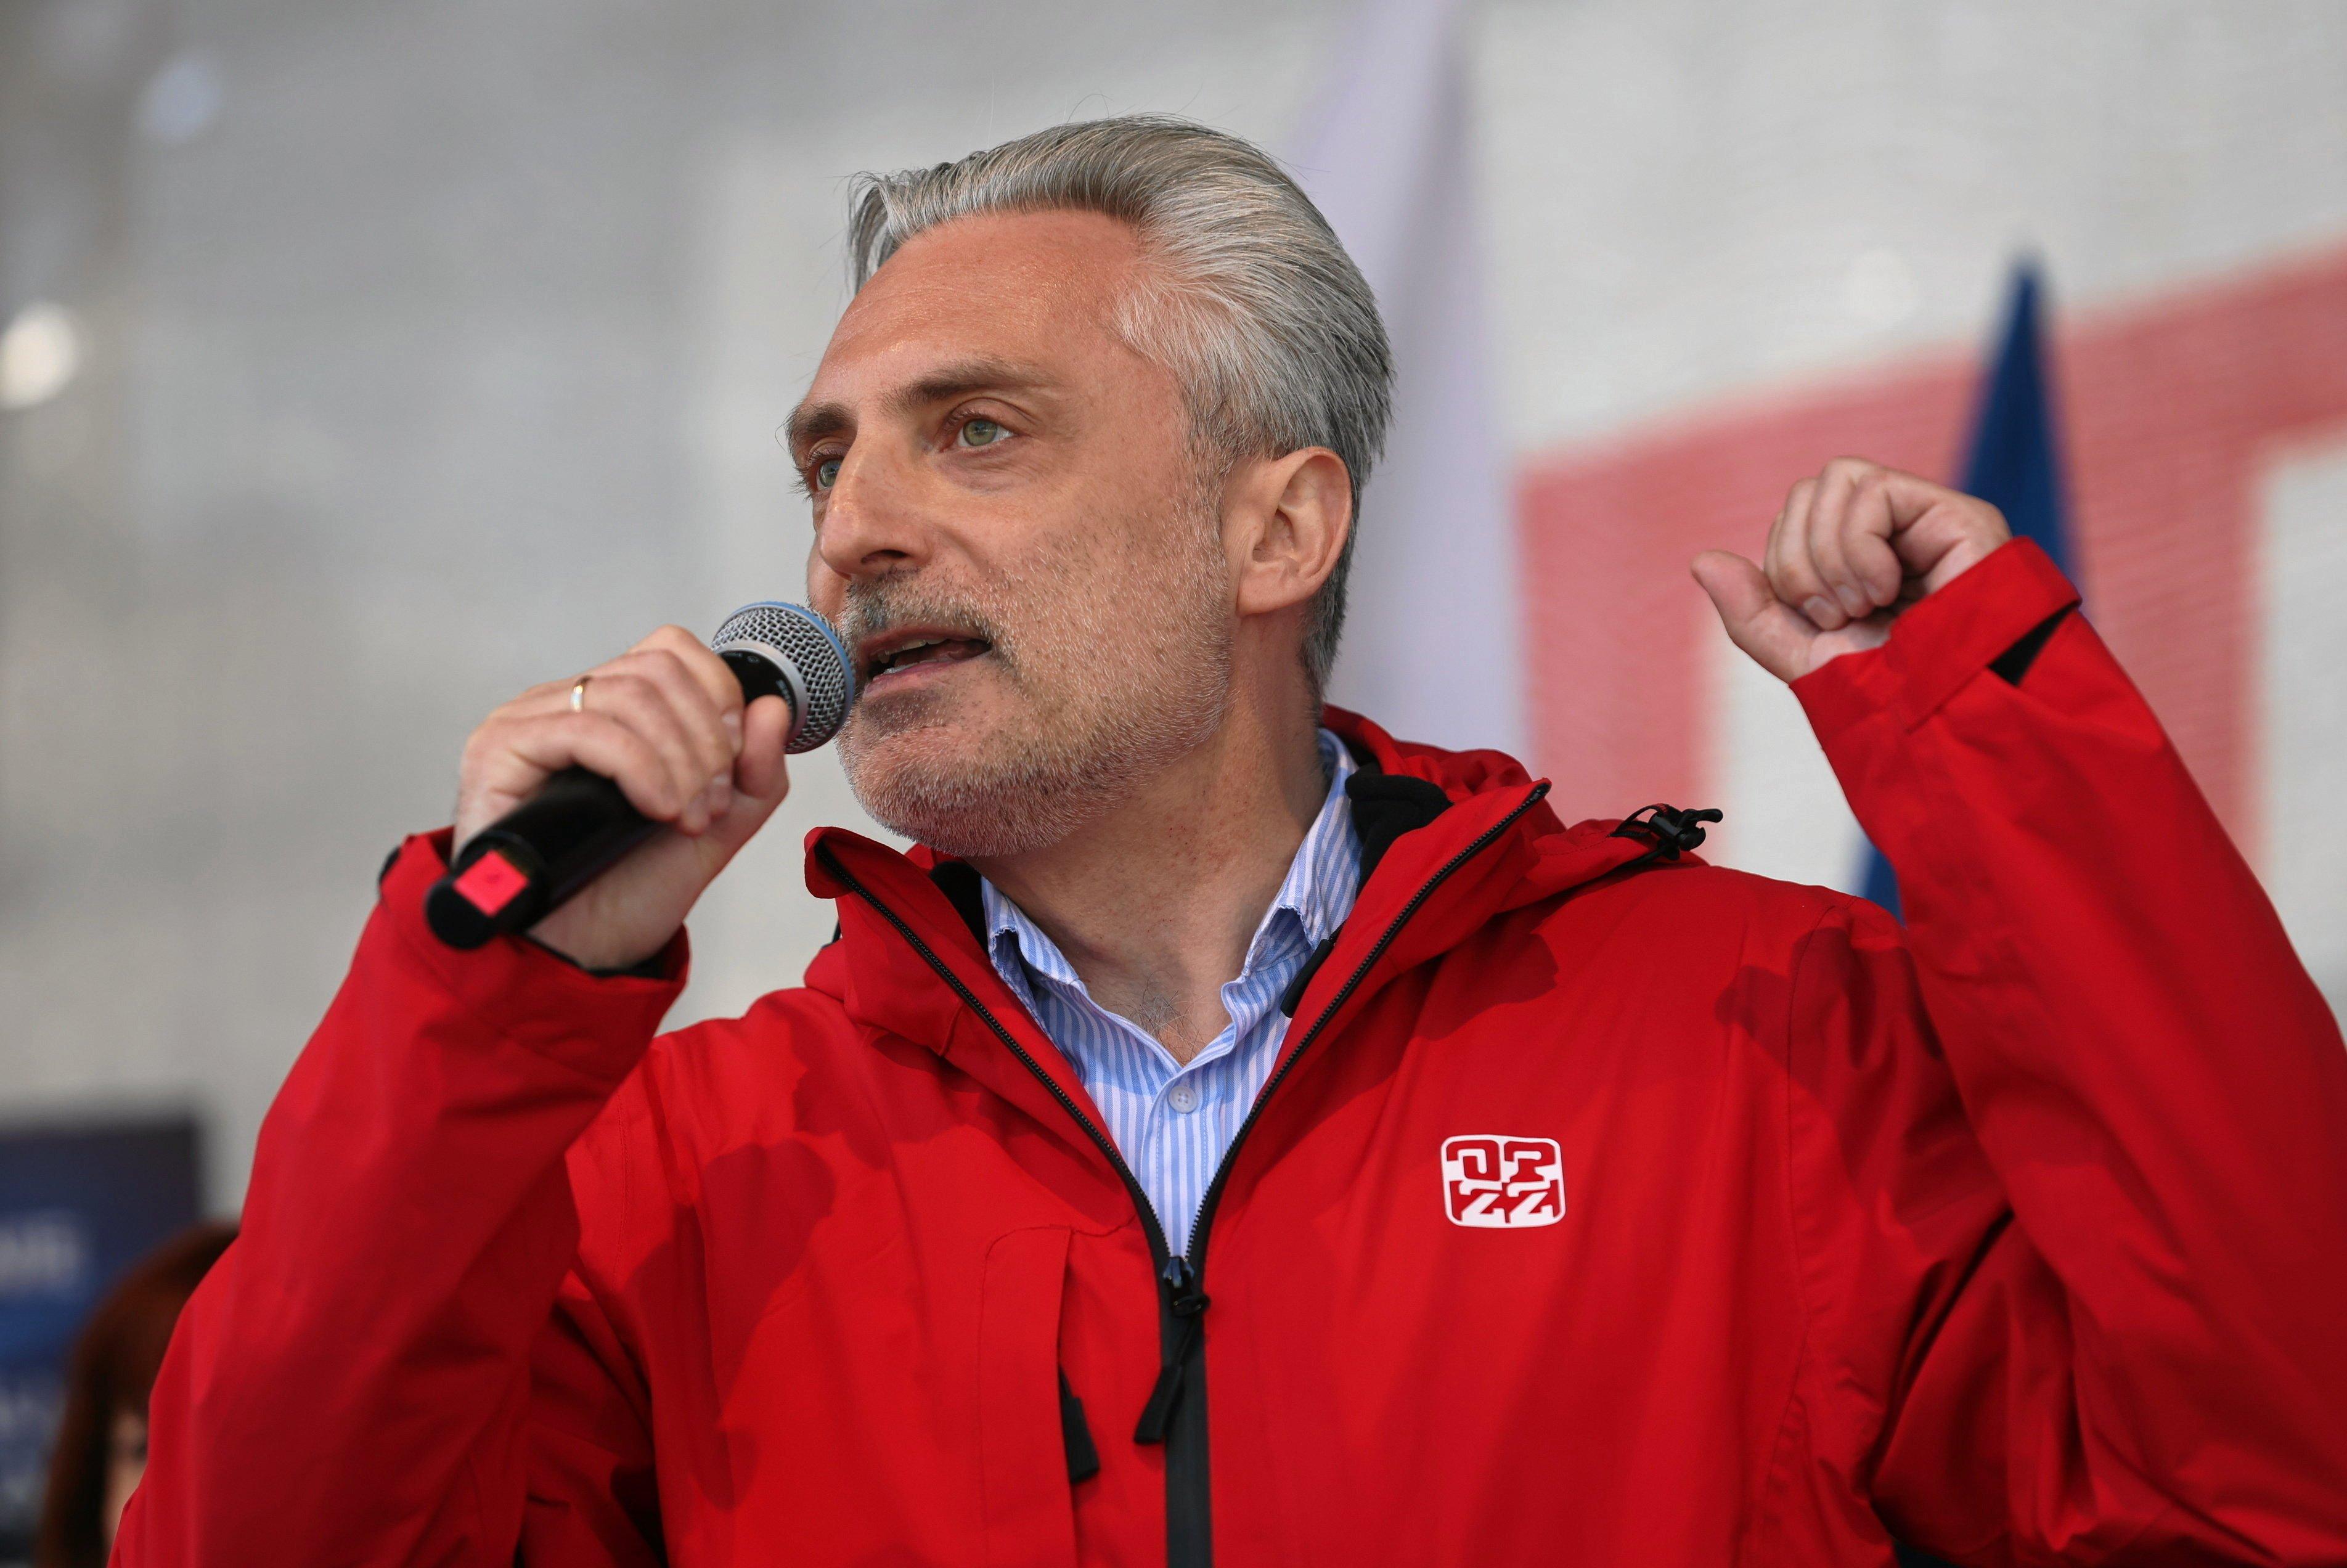 Mężczyzna w siwych włosach przemawia do mikrofonu z podniesionymi rękami, nosi czerwoną kurtkę